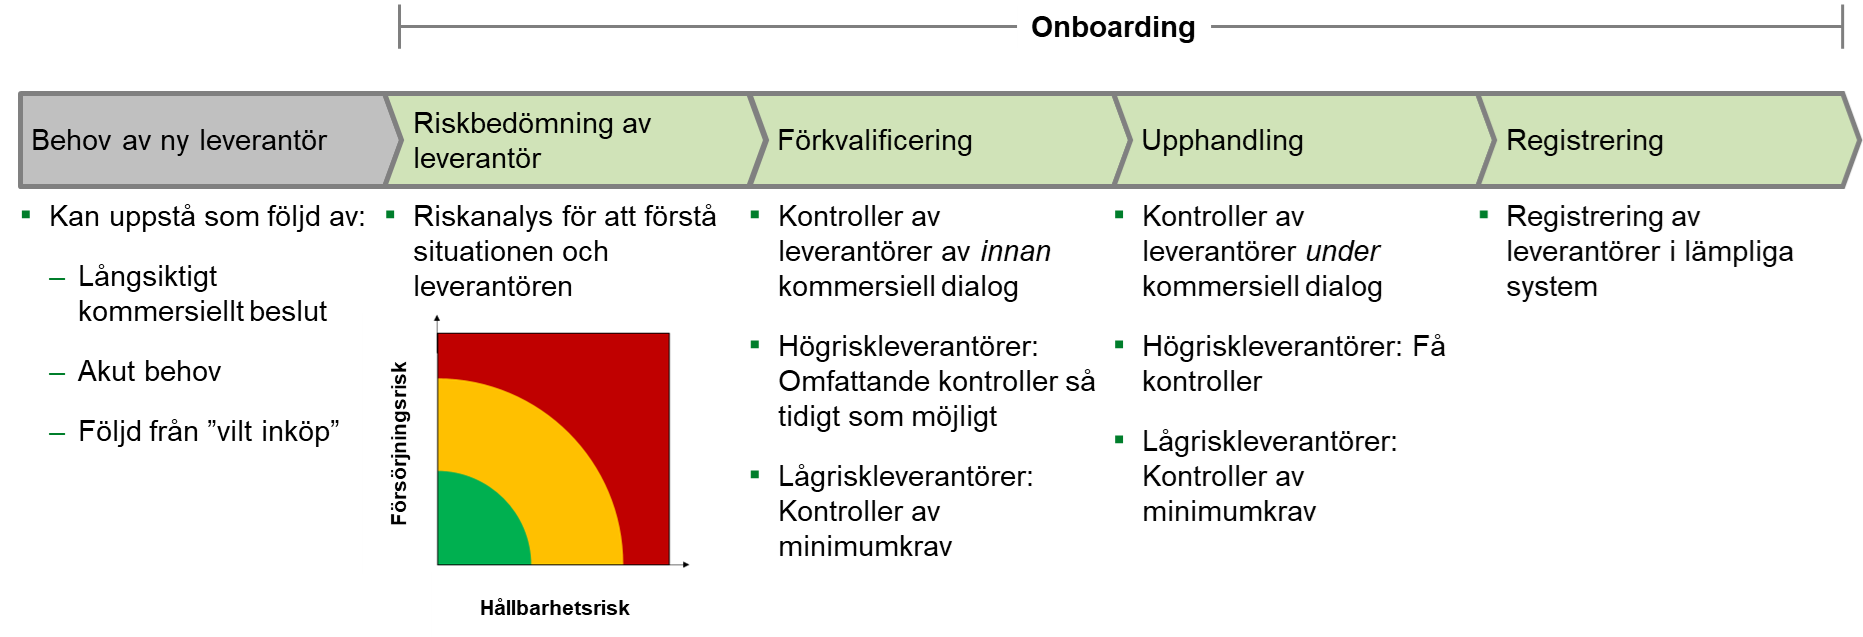 Process för onboarding av leverantörer